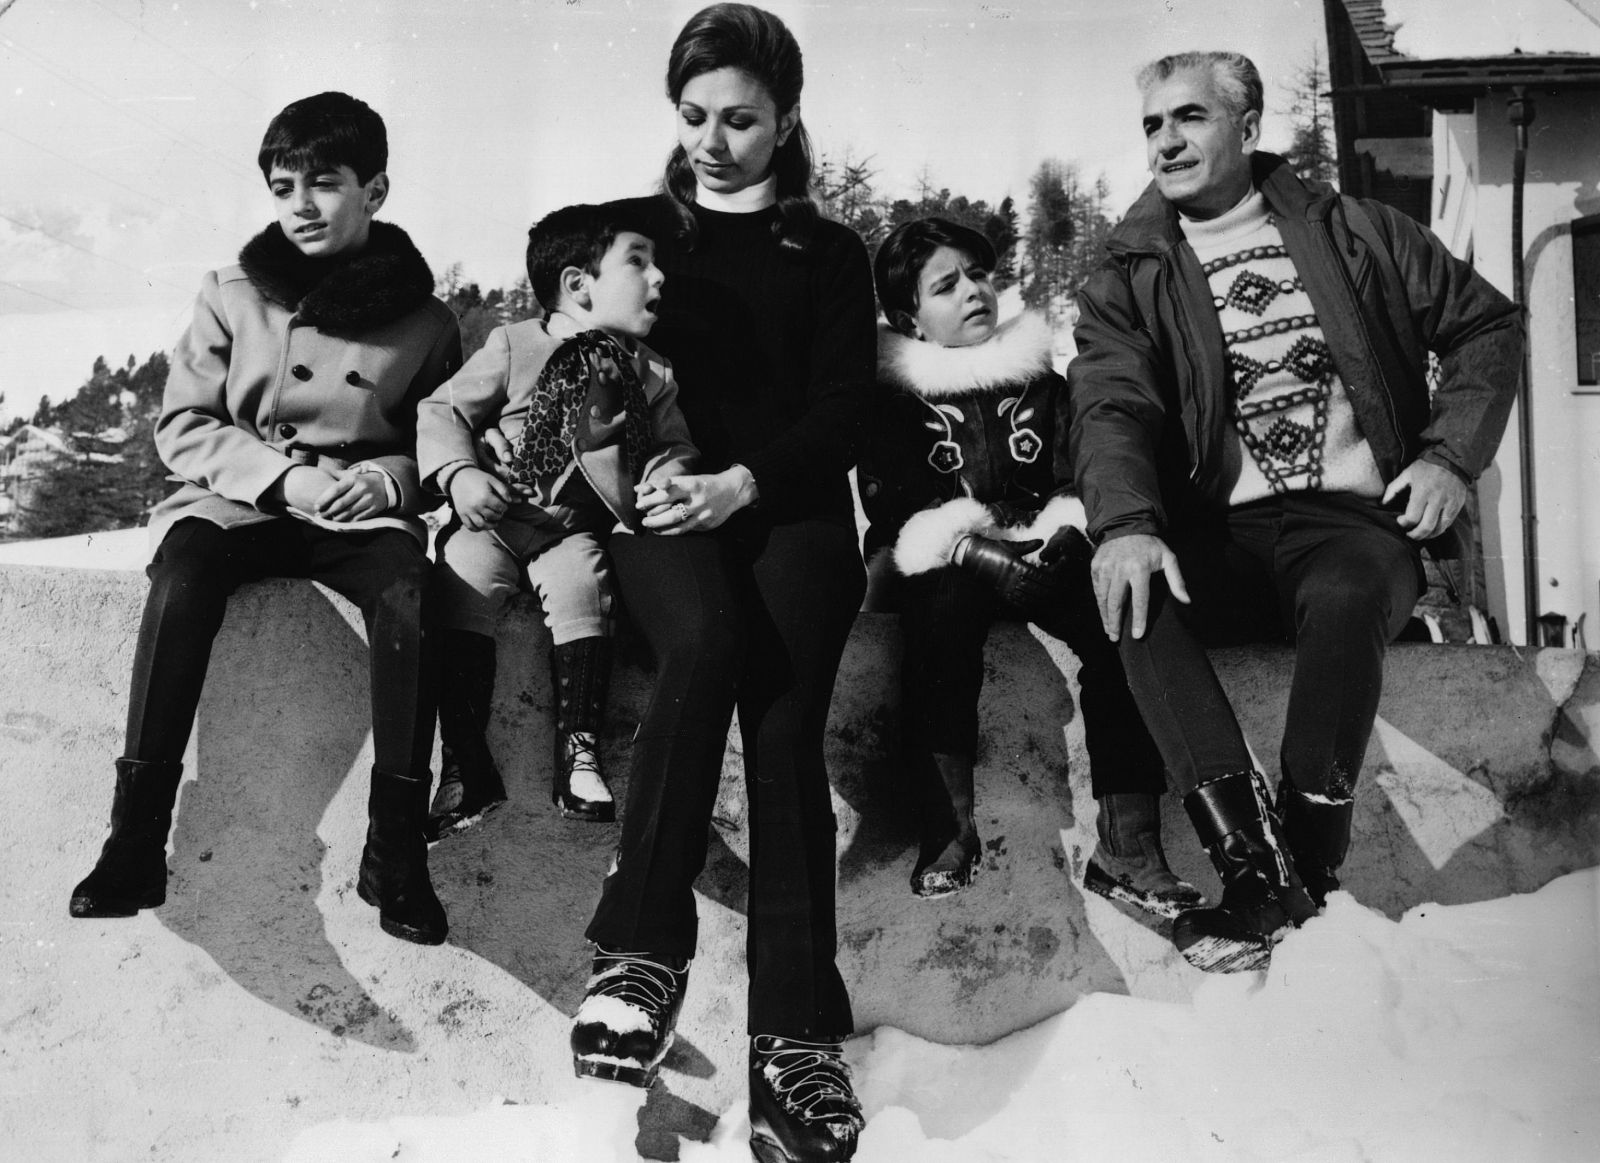 La familia del Shah, retratada el 6 de febrero de 1969 durante unas vacaciones en Sant Moritz (Francia).